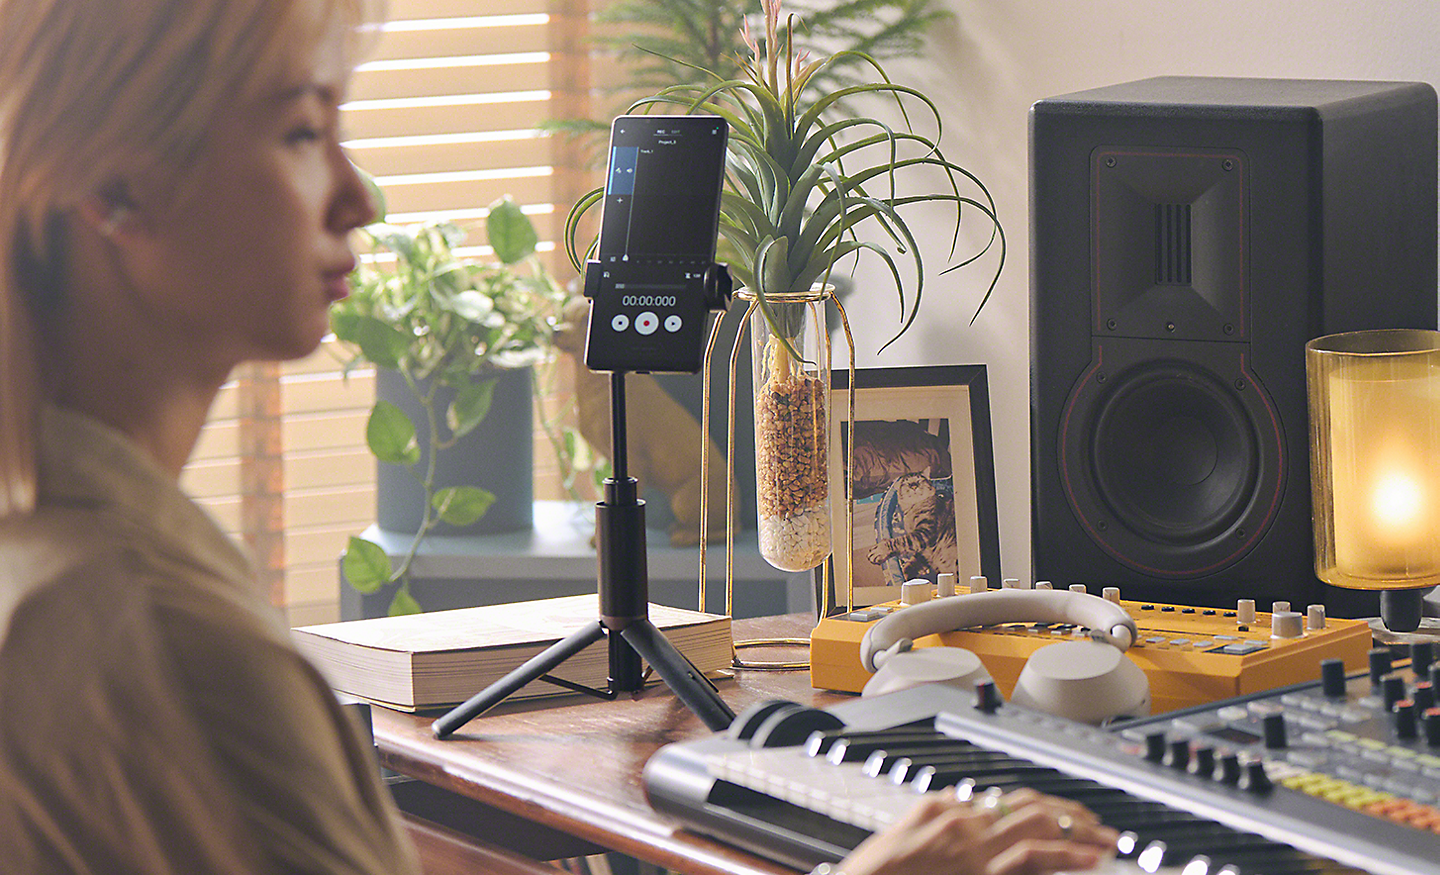 มือคีย์บอร์ดกำลังใช้ Xperia 1 V ที่มี Music Pro เพื่อบันทึกเพลงของตน